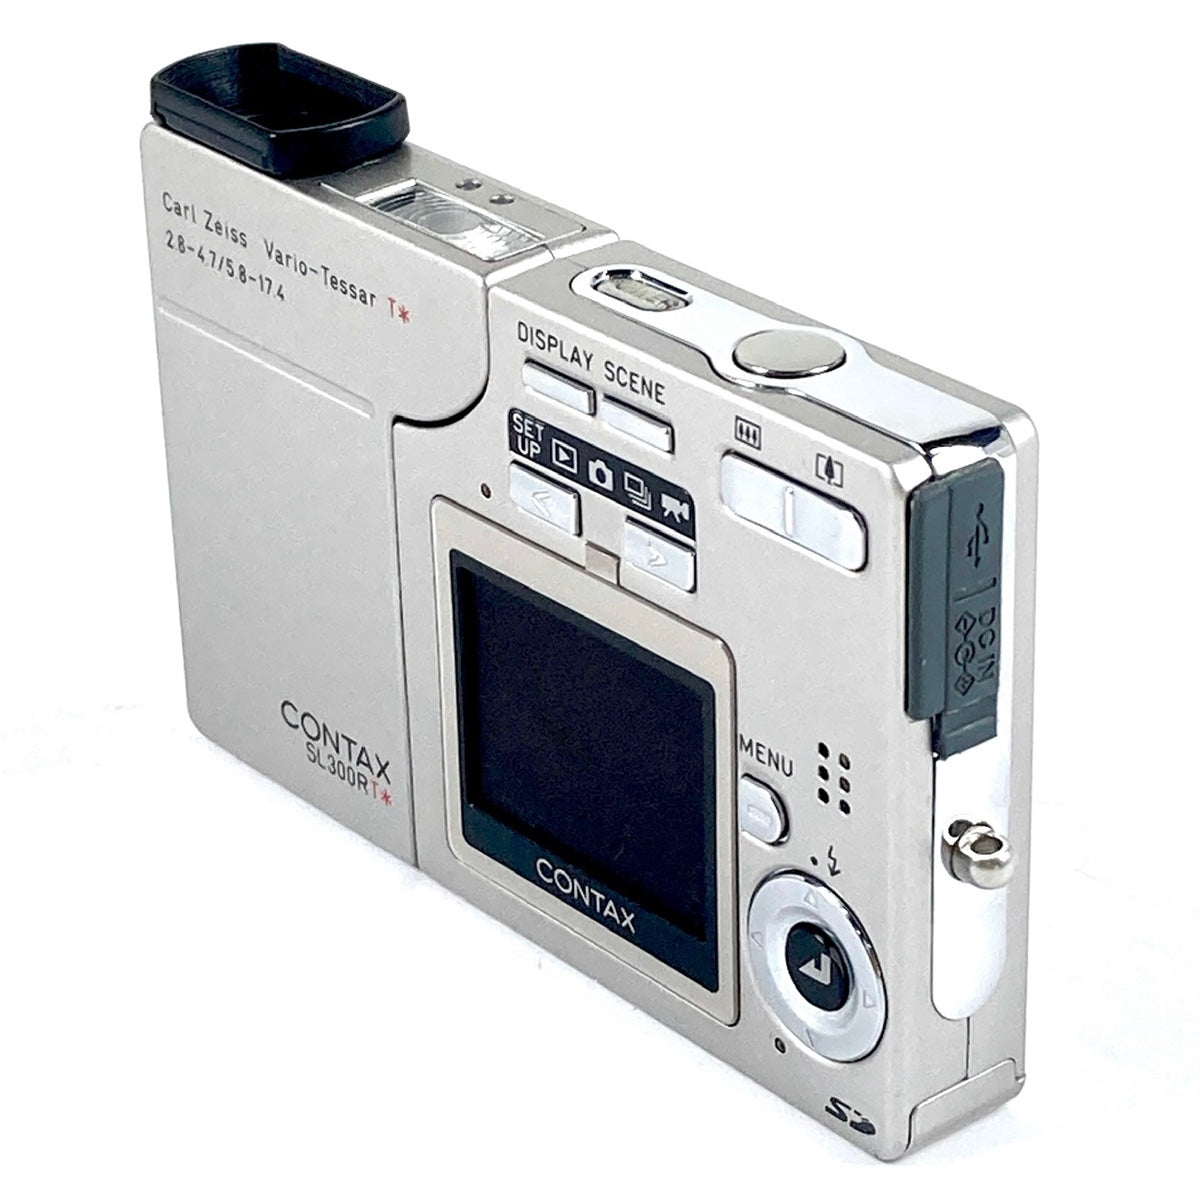 テレビ・オーディオ・カメラコンタックス SL300RT contax デジタルカメラ デジカメ